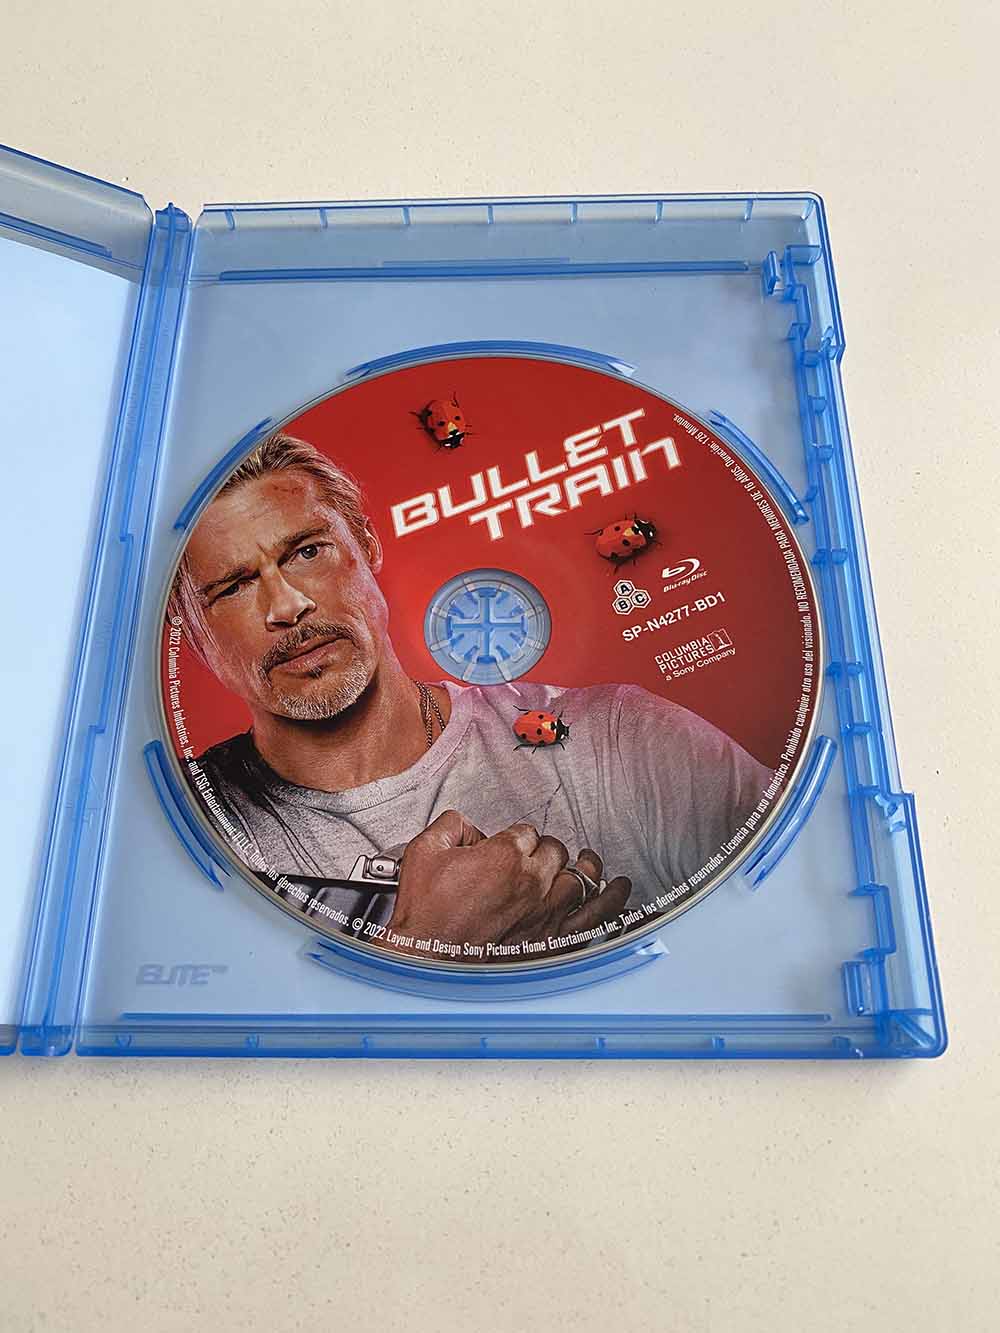 Análisis del Blu-ray de ‘Bullet train’